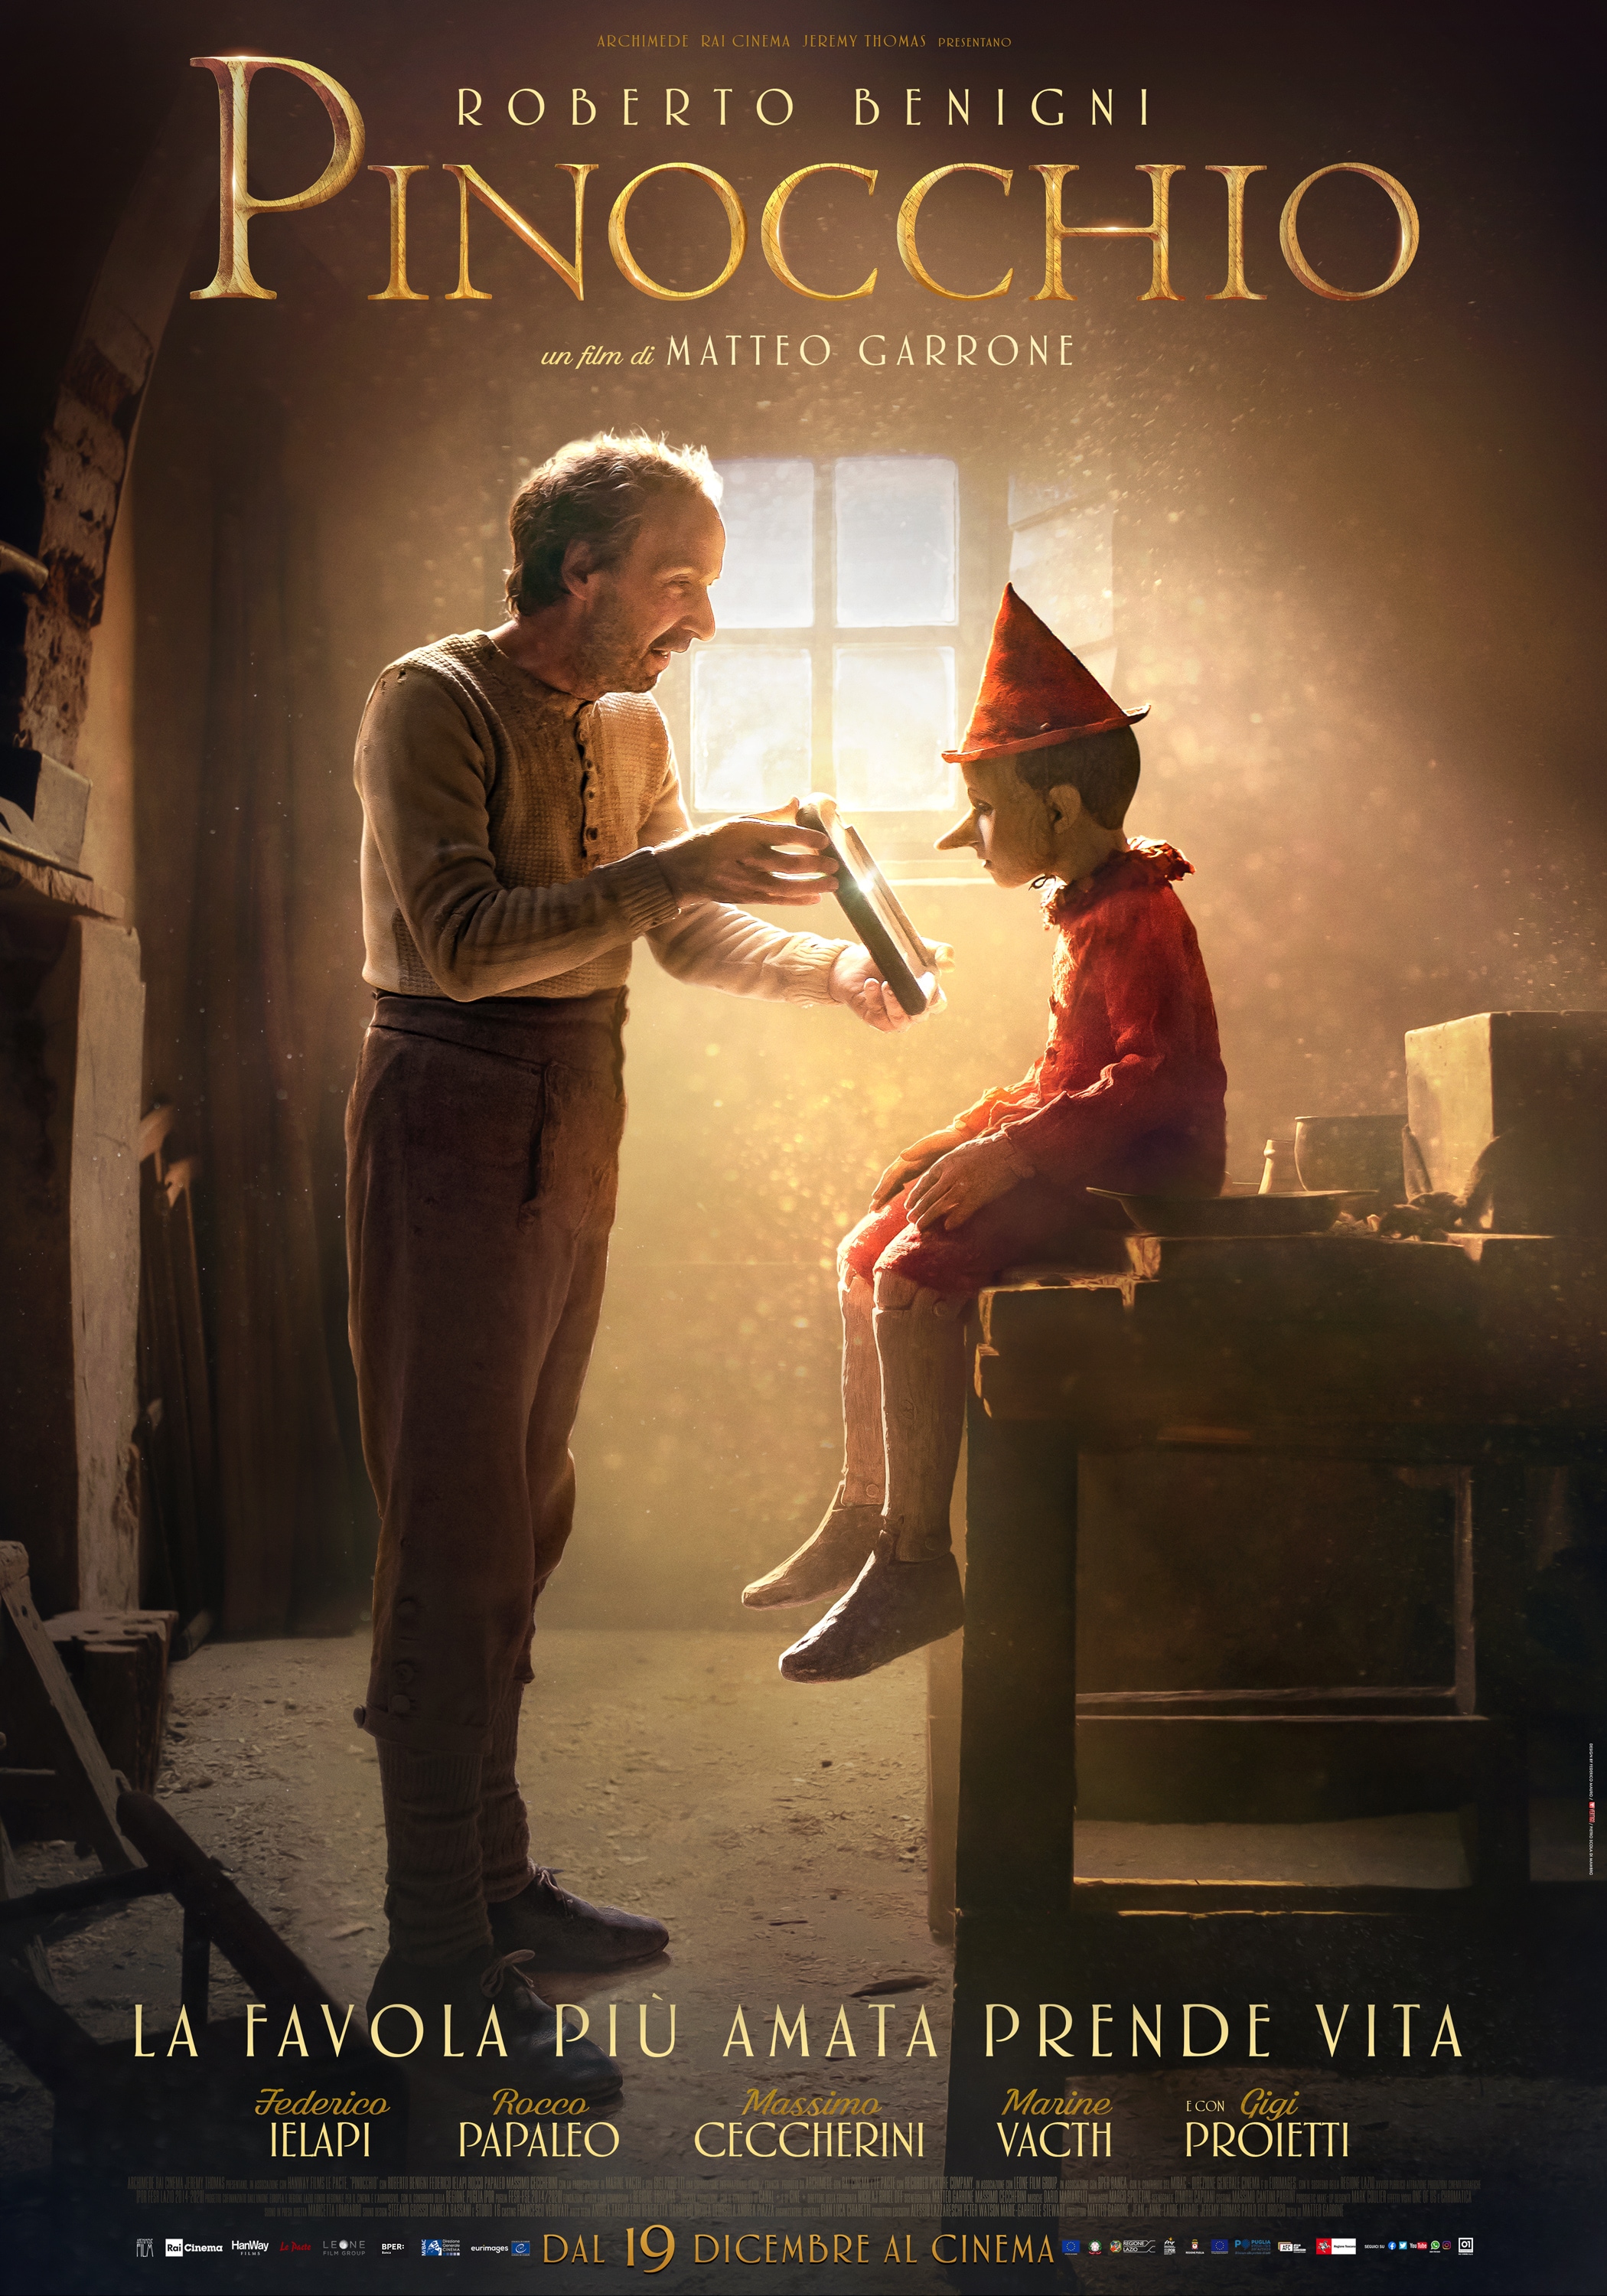 Pinocchio di Matteo Garrone, la locandina originale del film